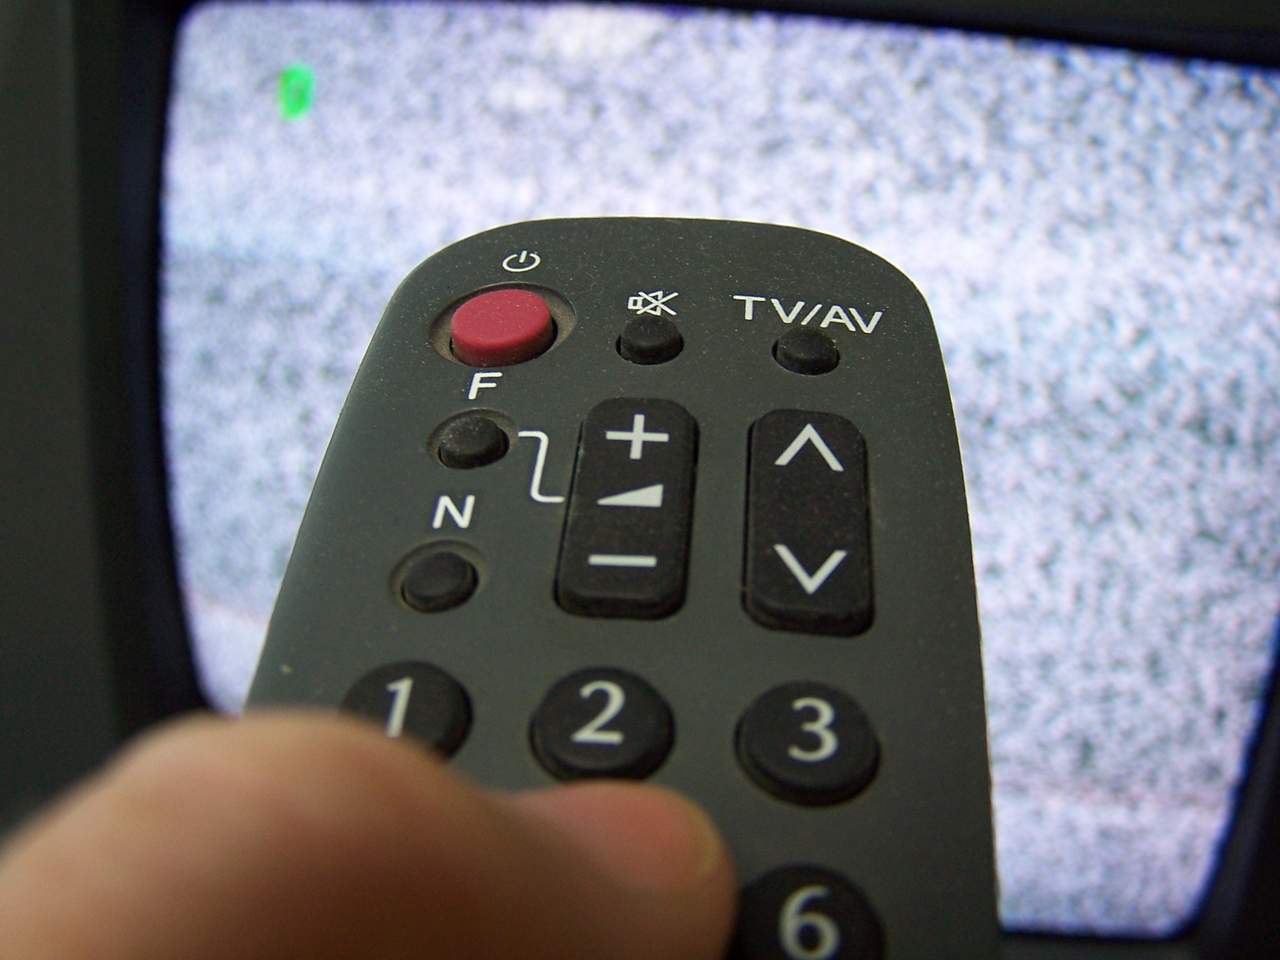 Υπουργείο Ψηφιακής Διακυβέρνησης: Οι «Λευκές Περιοχές» αποκτούν τηλεοπτική κάλυψη γρήγορα και απλά, μέσω του gov.gr